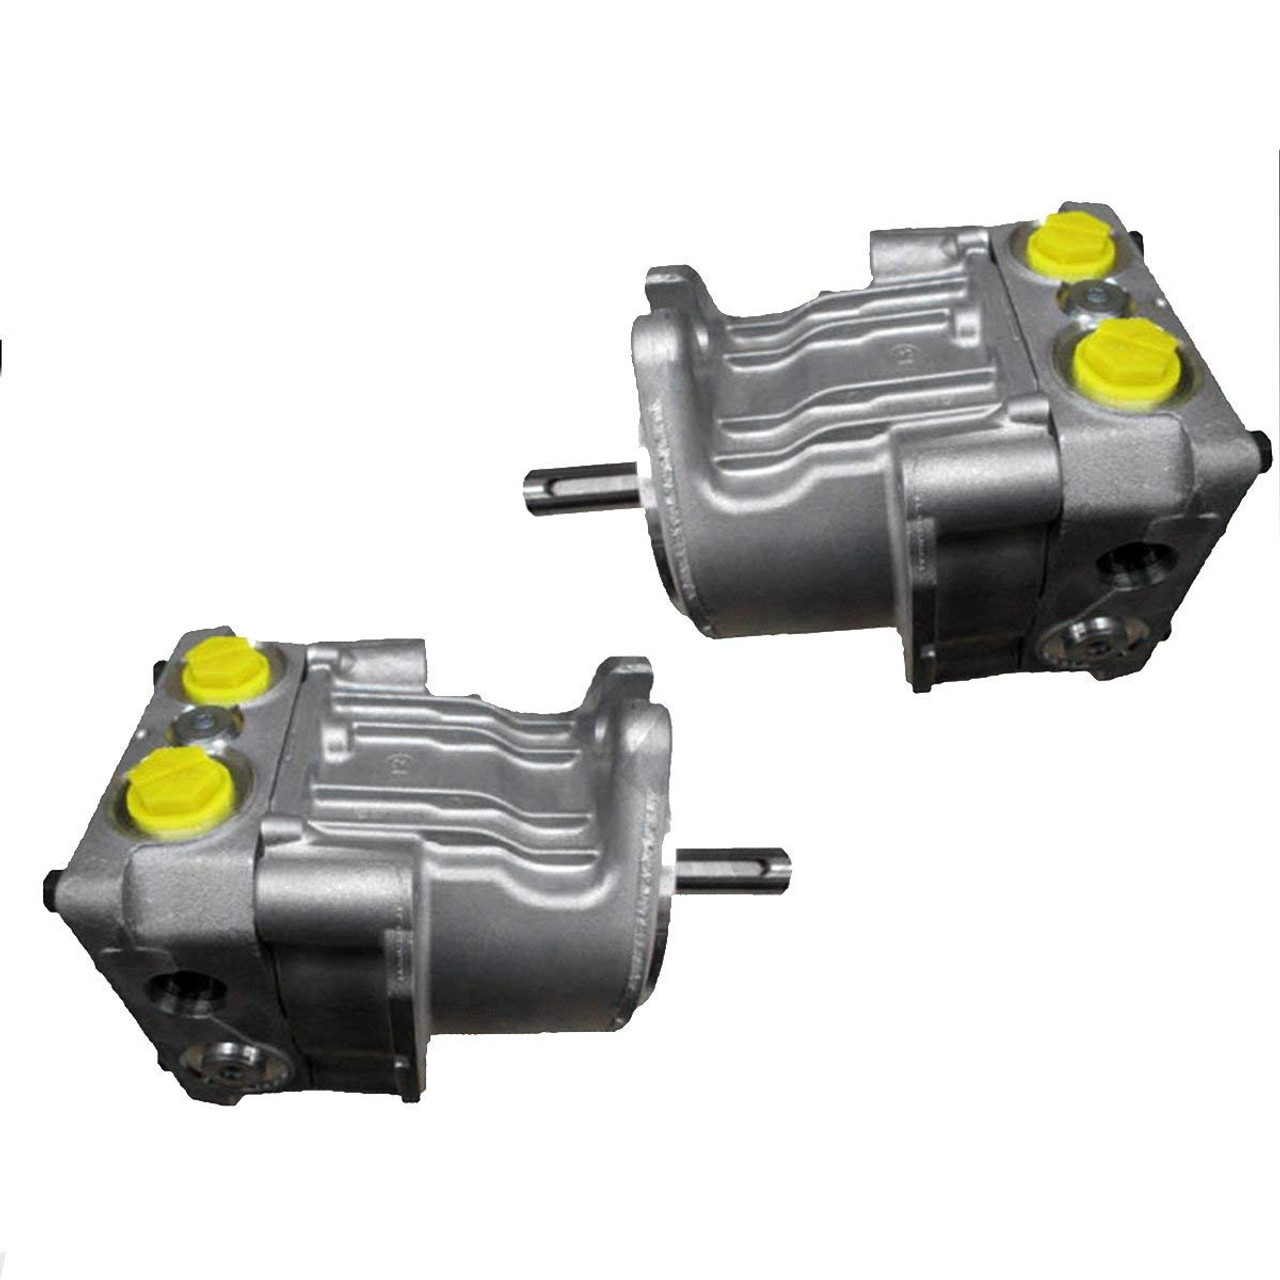 Hydro Gear Pump (Right & Left) Kit 10cc eXmark Turf Tracer Lawn Mowers & Others / PG-1JQQ-DY1X-XXXX, PG-1GQQ-DY1X-XXXX